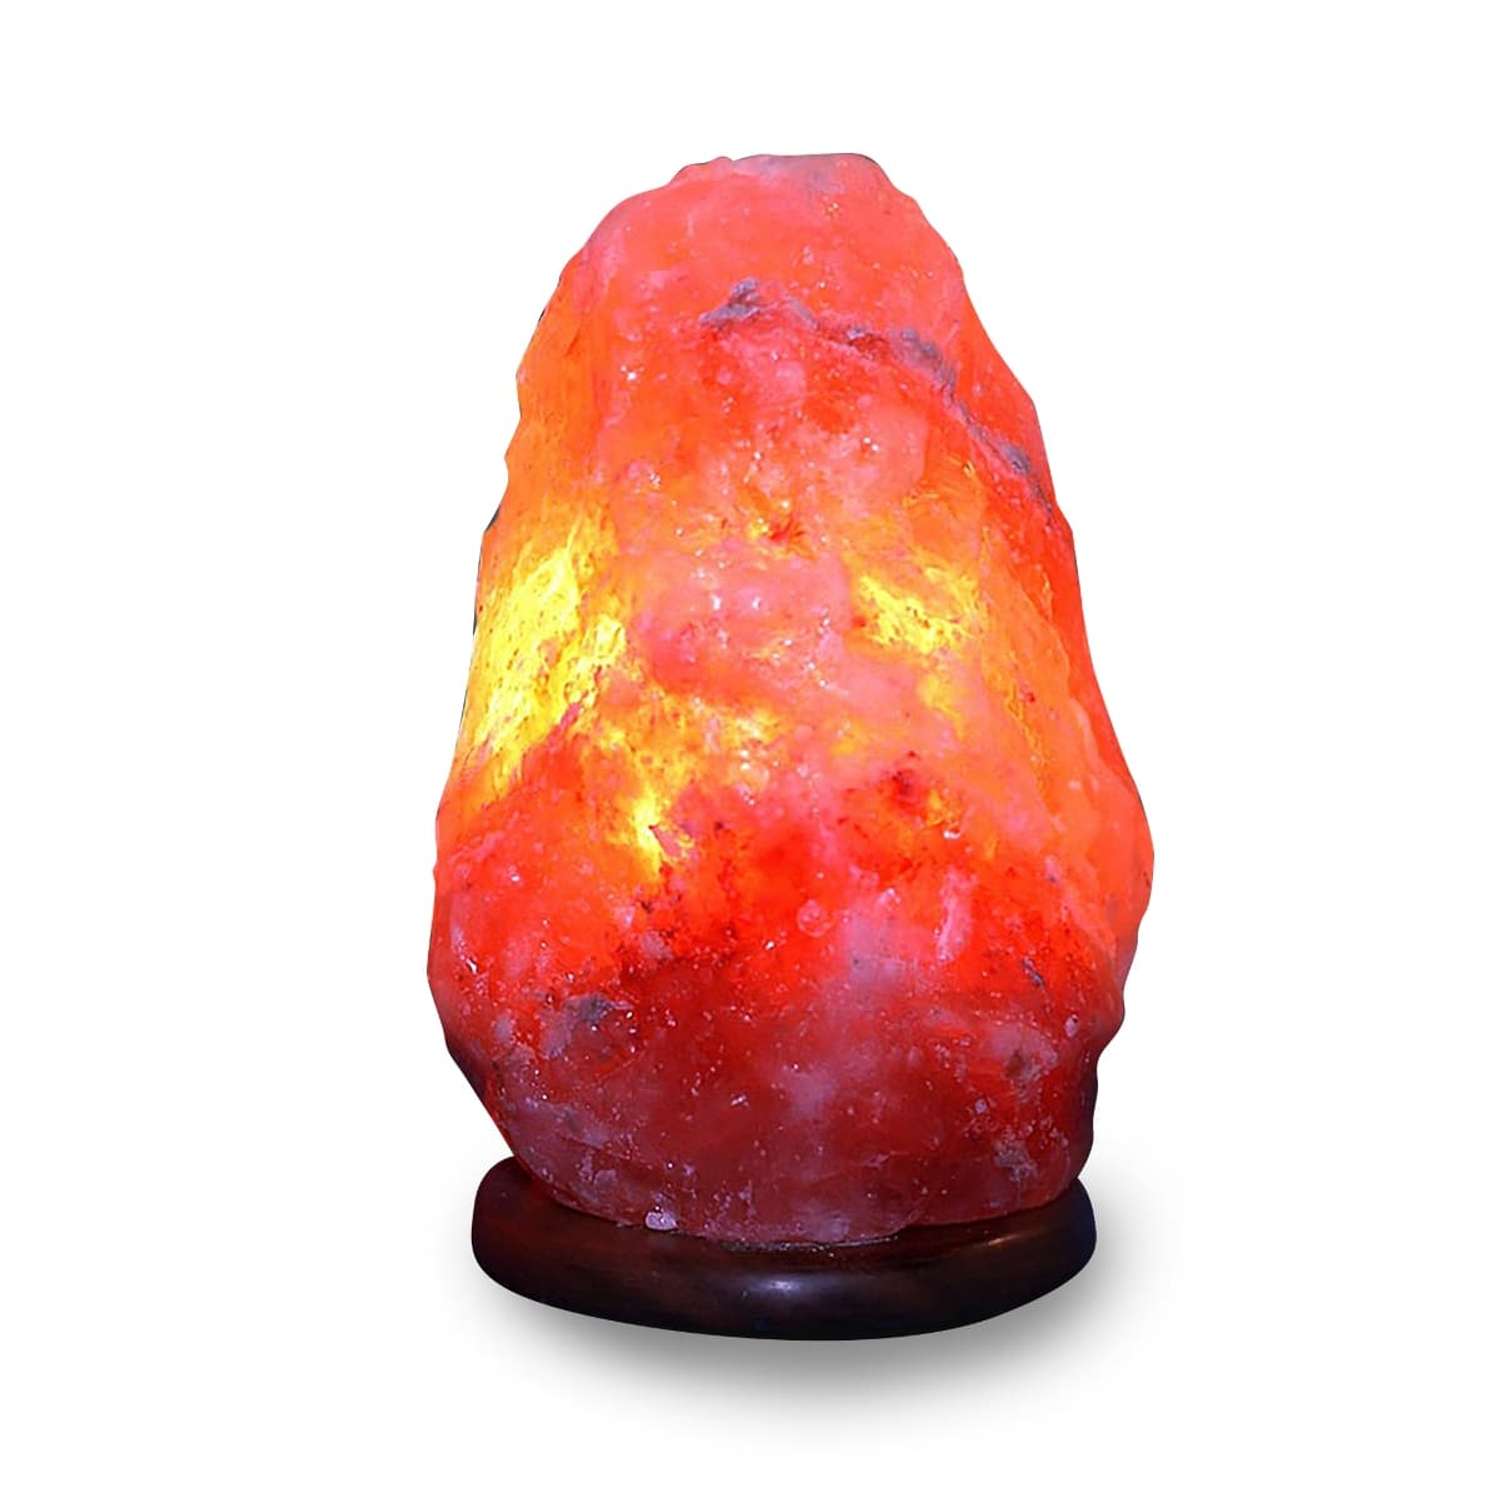 Солевая лампа Wonder Life скала 3-4кг Гималайская соль красного оттенка - фото 1